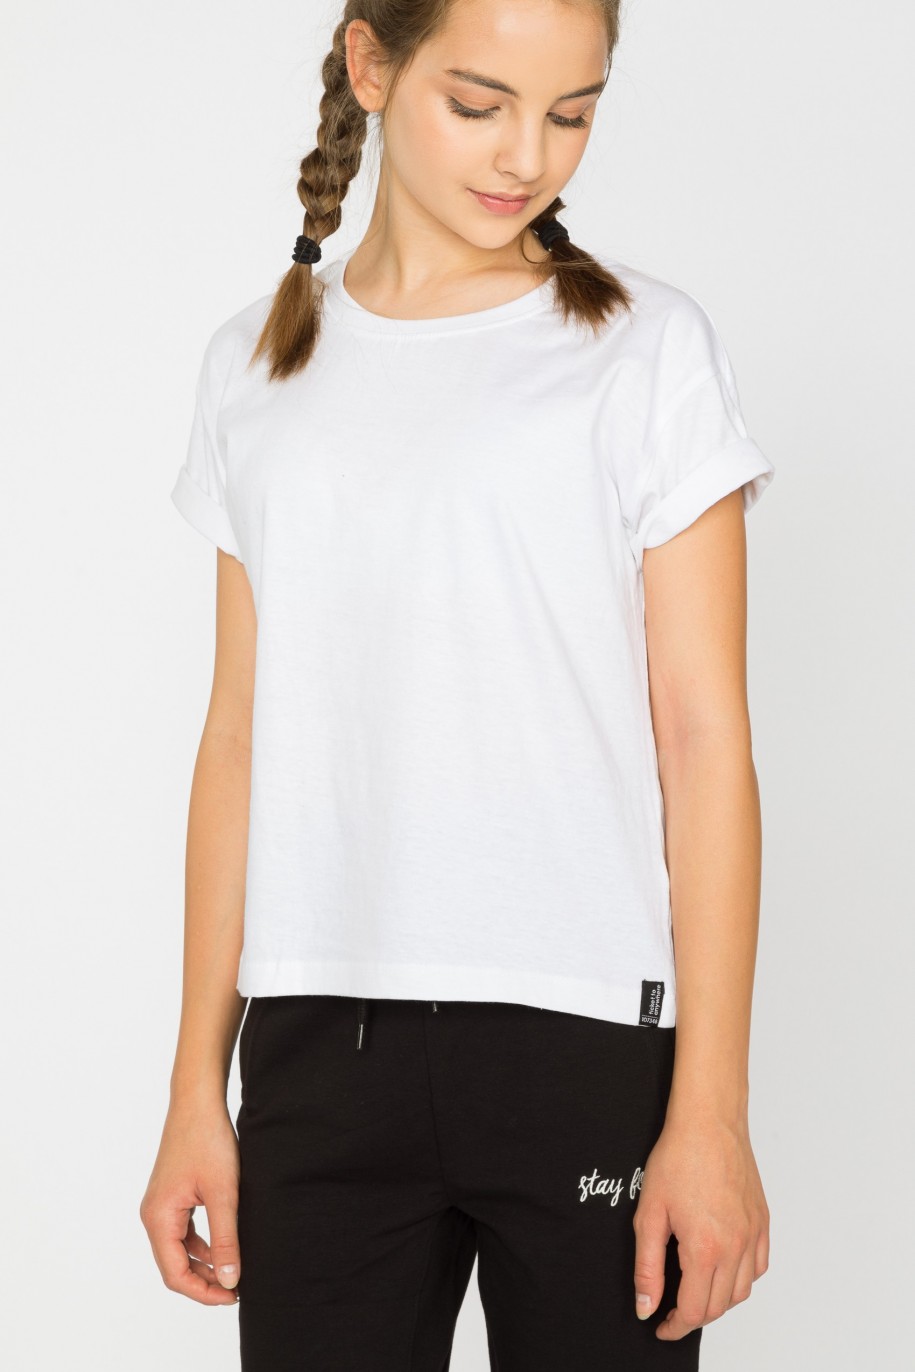 Biały t-shirt dla dziewczyny bez nadruku - 29363